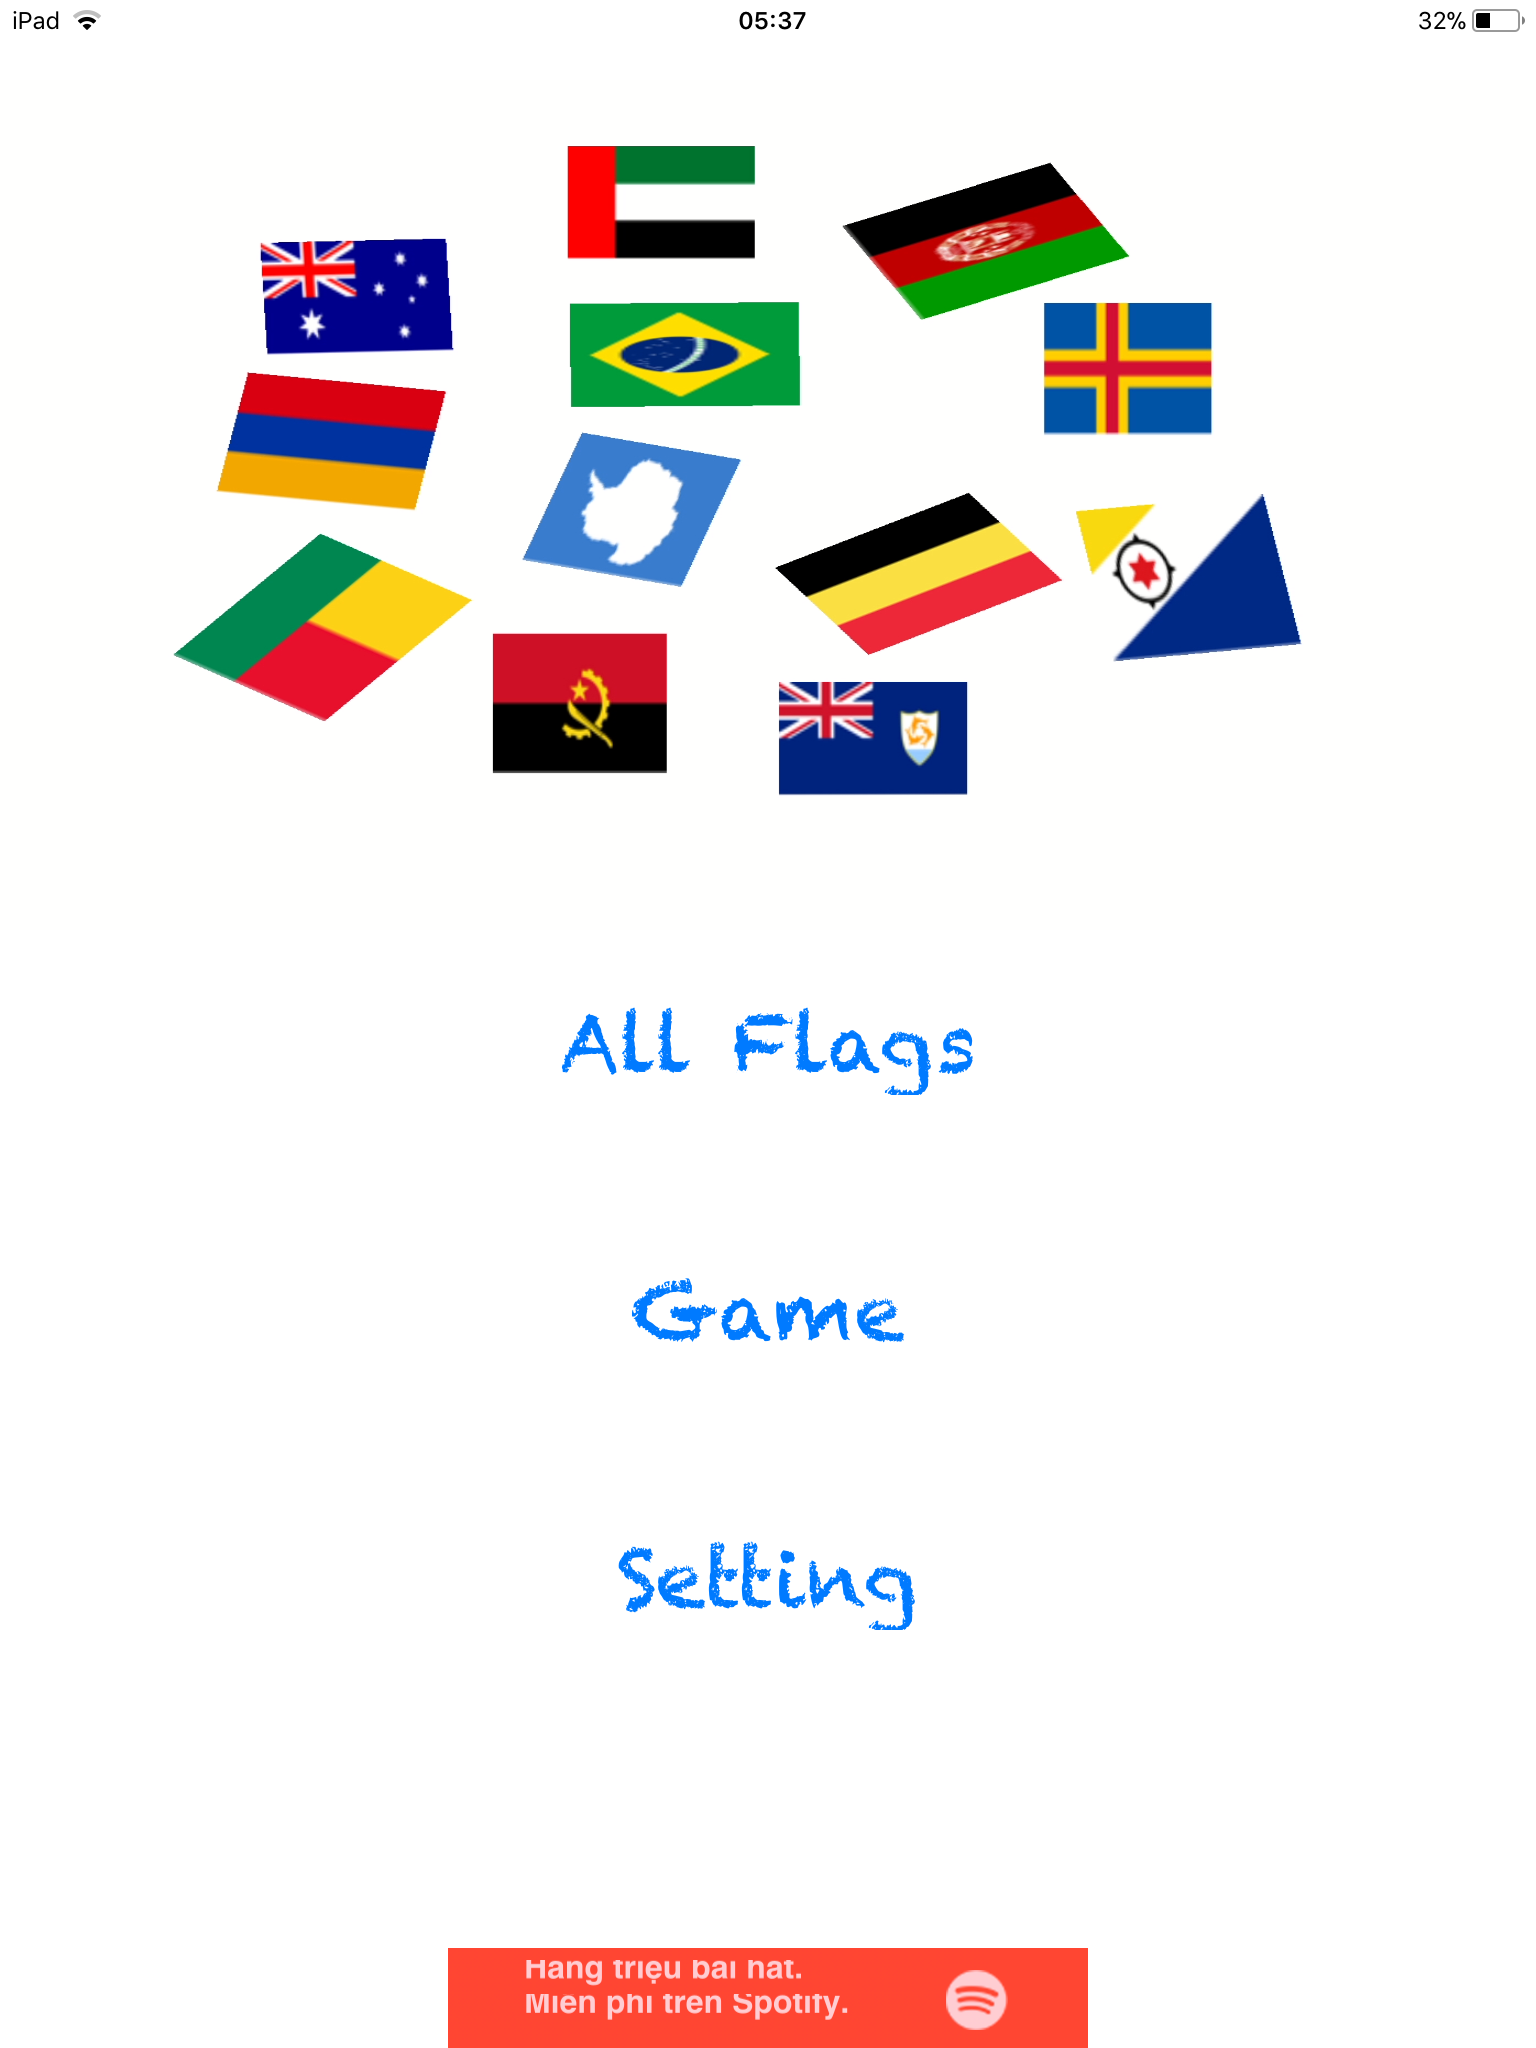 Với ứng dụng học cờ các nước cho bé của chúng tôi, con bạn sẽ được phát triển trí não một cách tuyệt vời. Với hình ảnh sinh động và đầy màu sắc, các con sẽ có thể học tập thông qua trò chơi và tìm hiểu về lịch sử và văn hóa của các nước. Hãy cùng chúng tôi khám phá thế giới qua các lá cờ các nước!